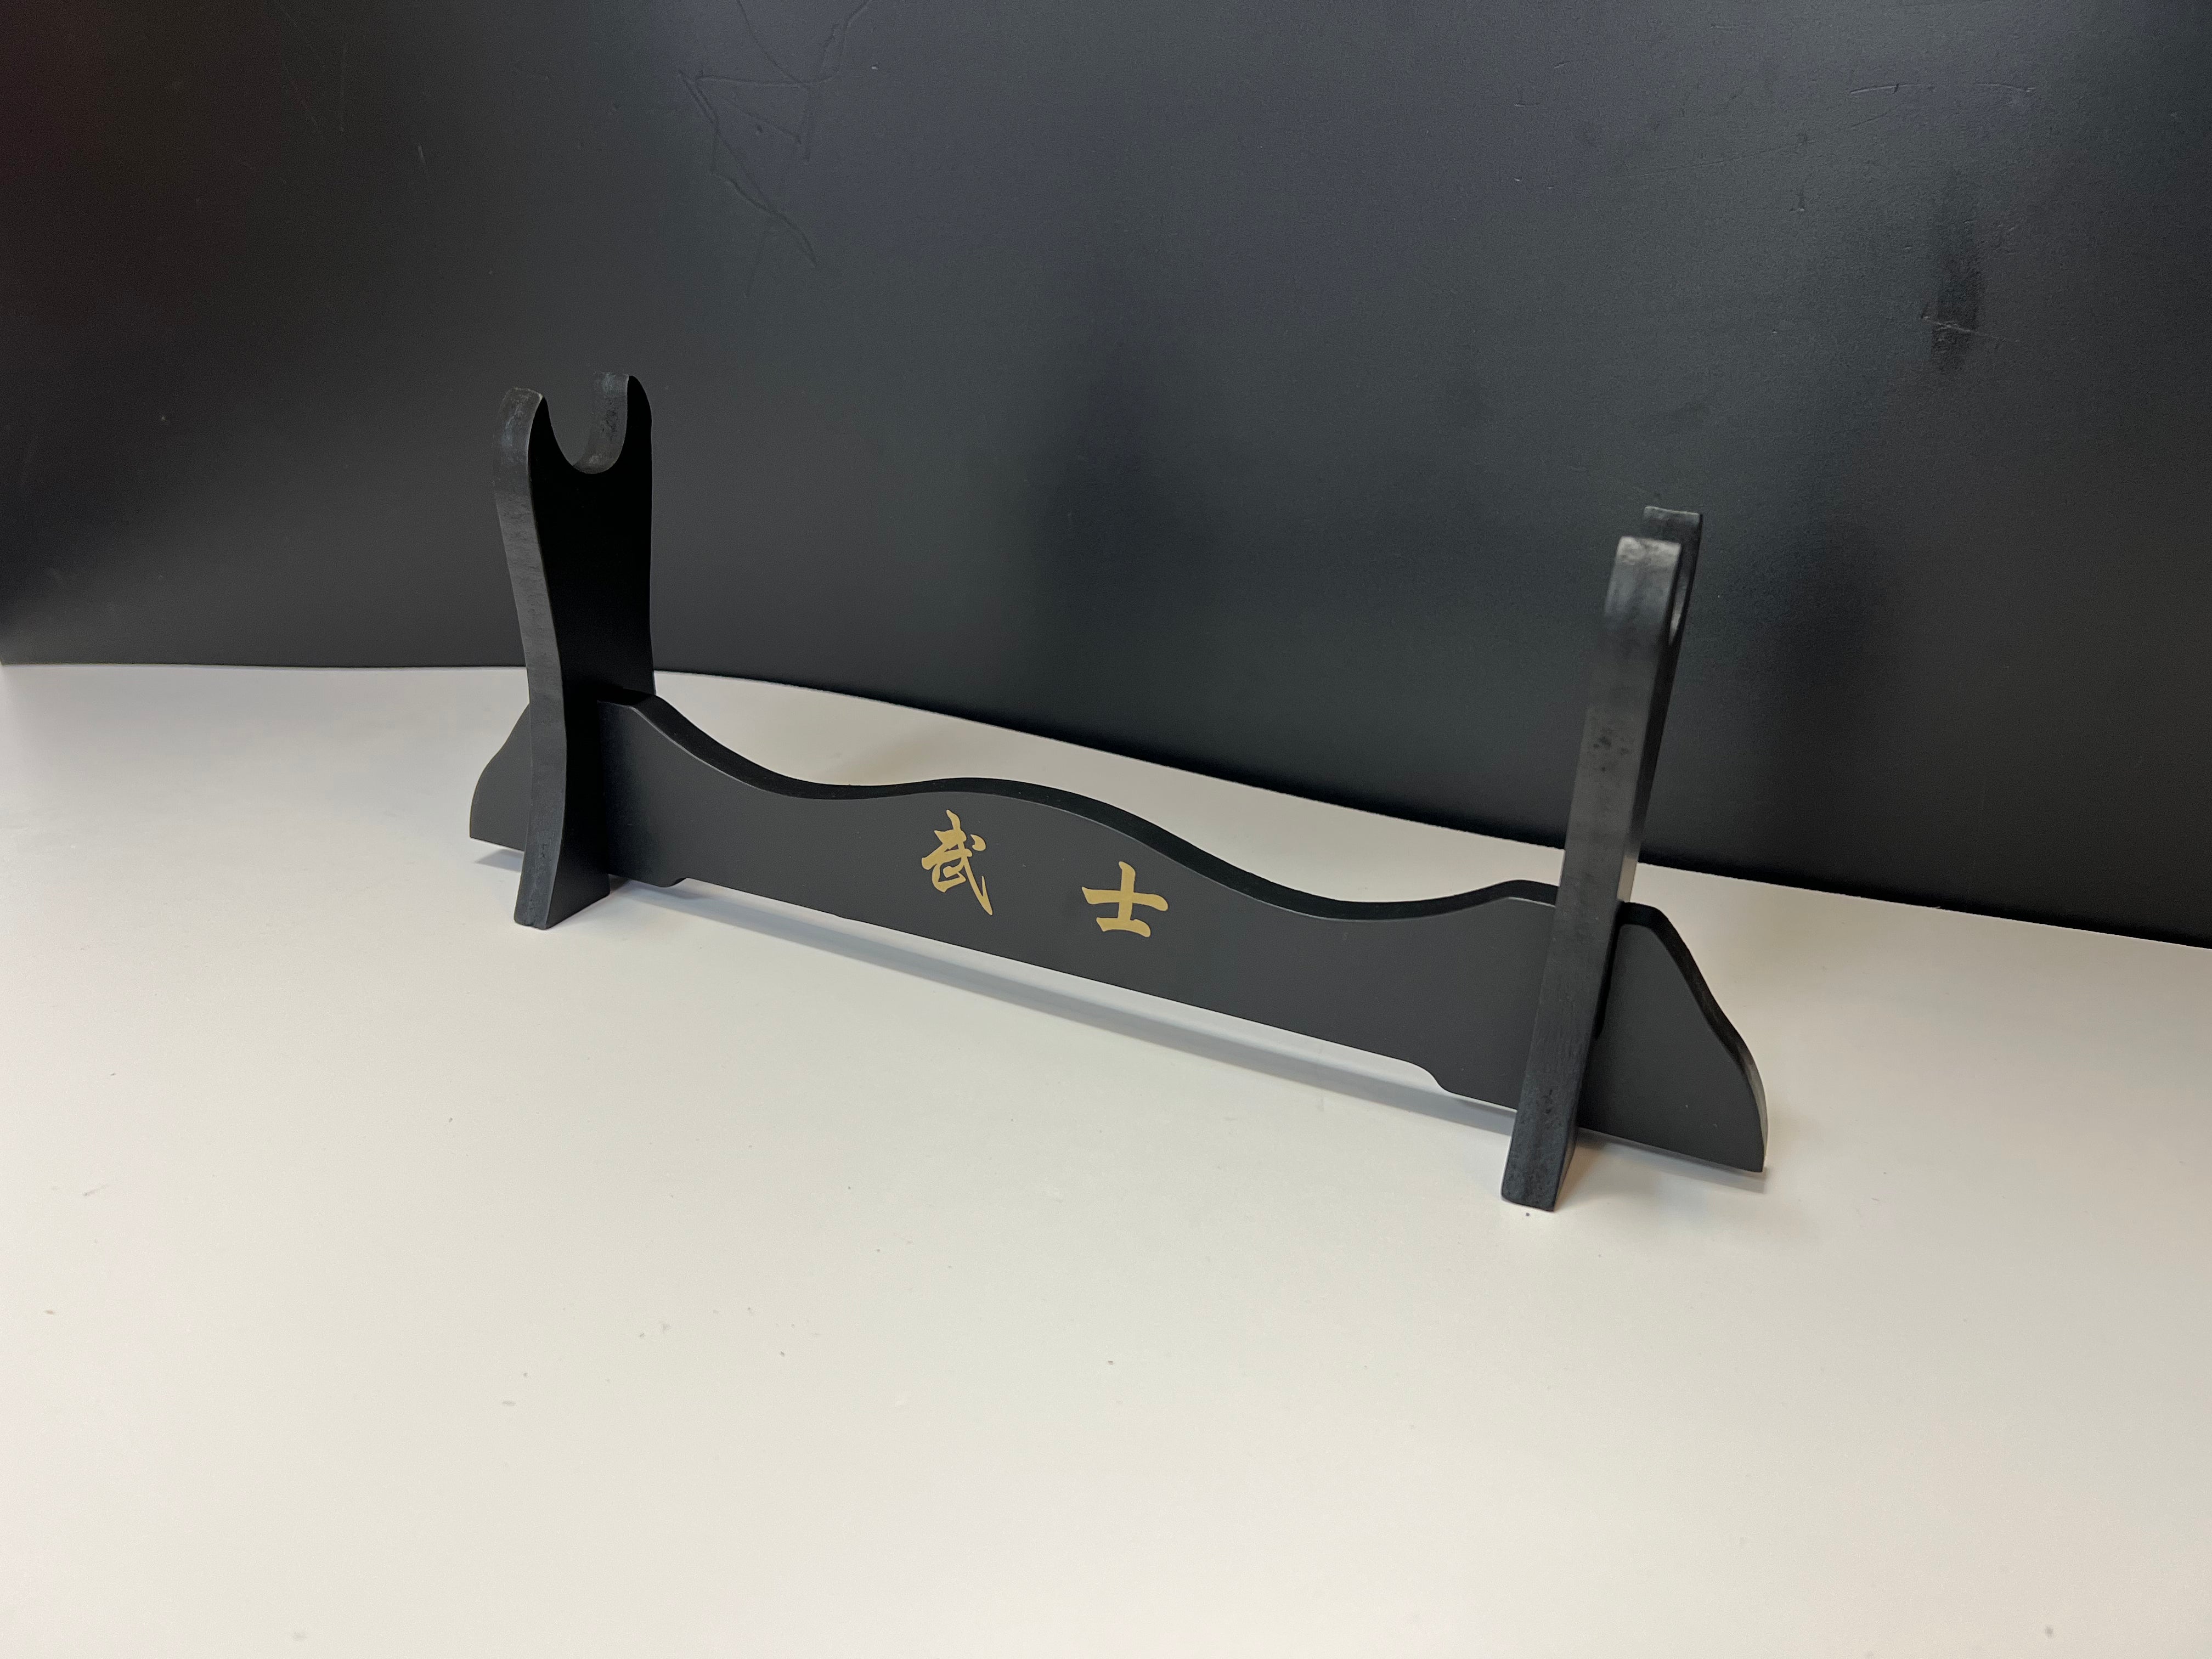 Table Stand for Katana/Sword